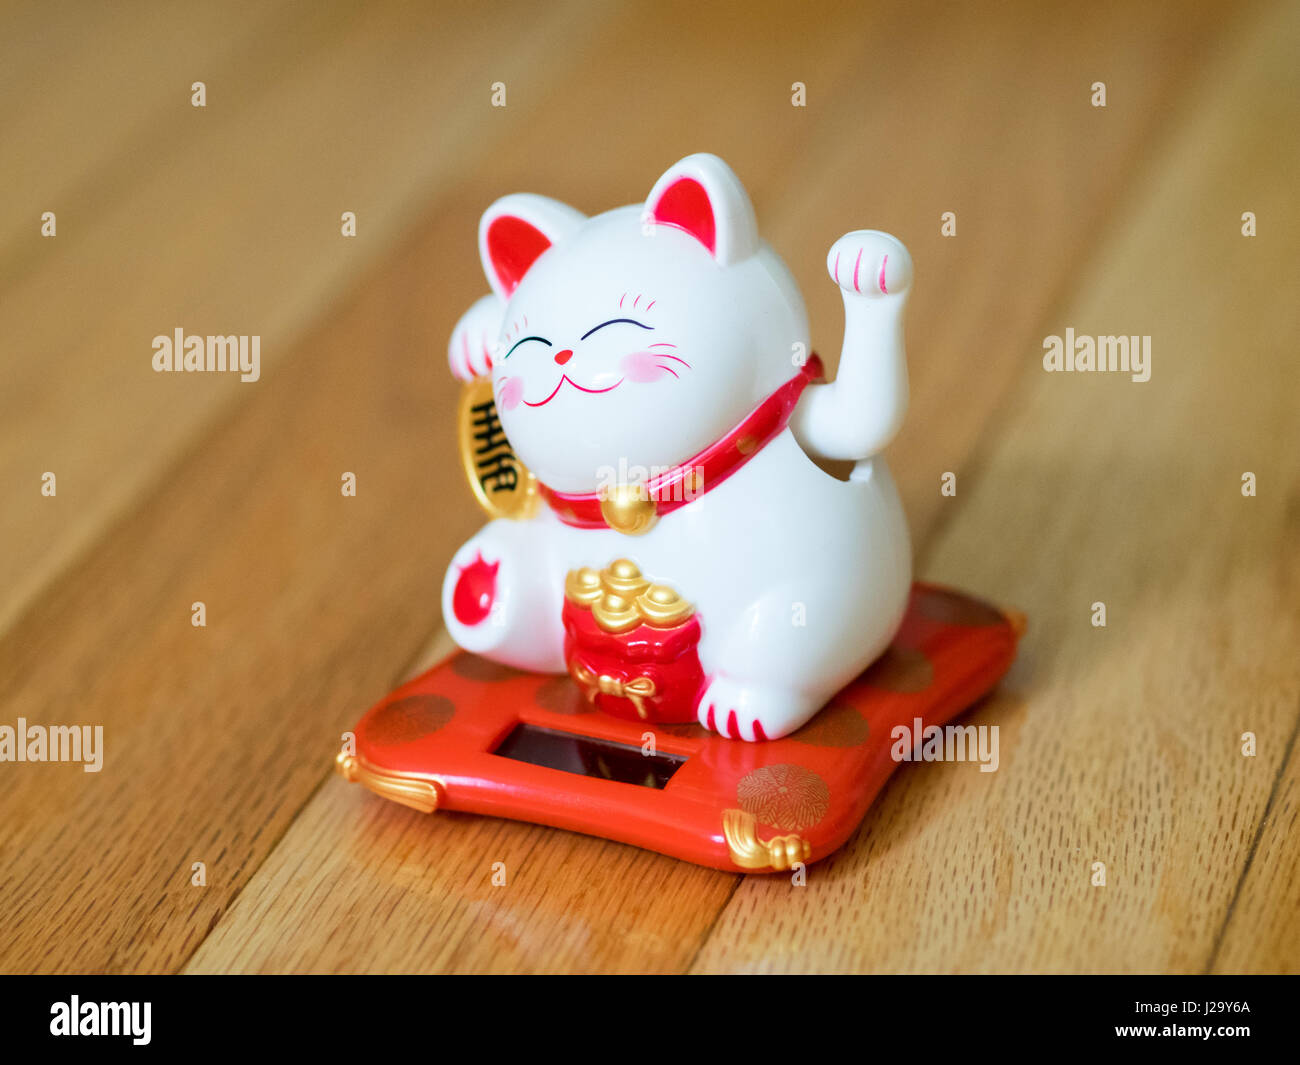 Maneki-Neko (buchstäblich, "winkte Katze" auf Japanisch, auch bekannt als eine glückliche Katze, chinesische lucky Cat oder happy Cat) Figur. Eine beliebte Glücksbringer. Stockfoto